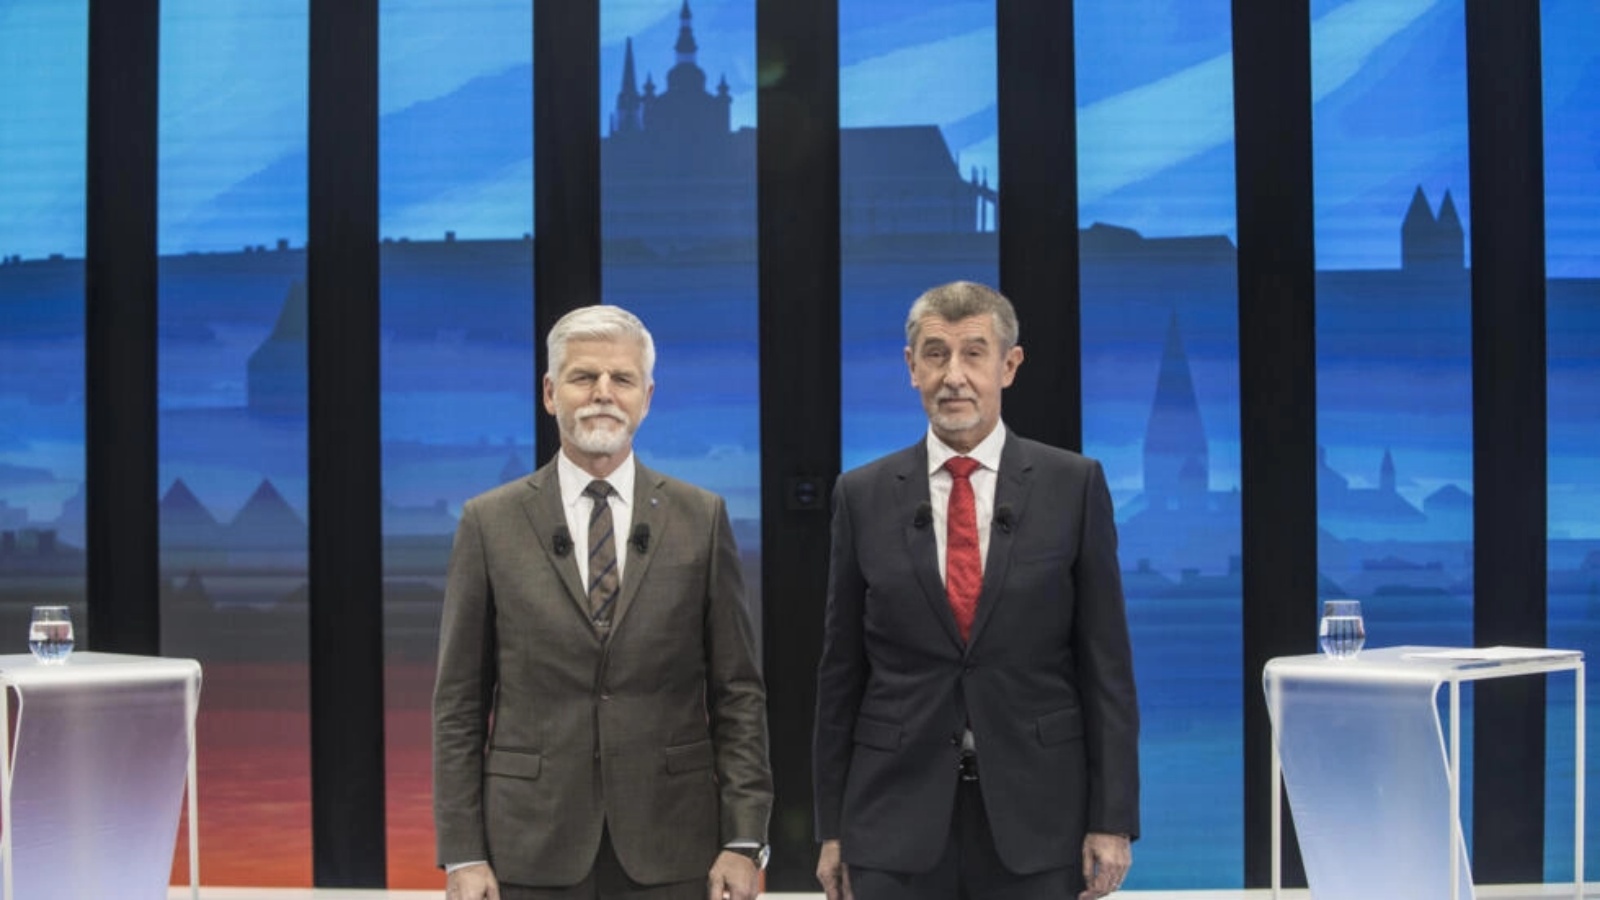 المرشحان للرئاسة في تشيكيا بيتر بافيل (يسار) وأندريه بابيش قبل مناظرة تلفزيونية في 25 يناير 2023